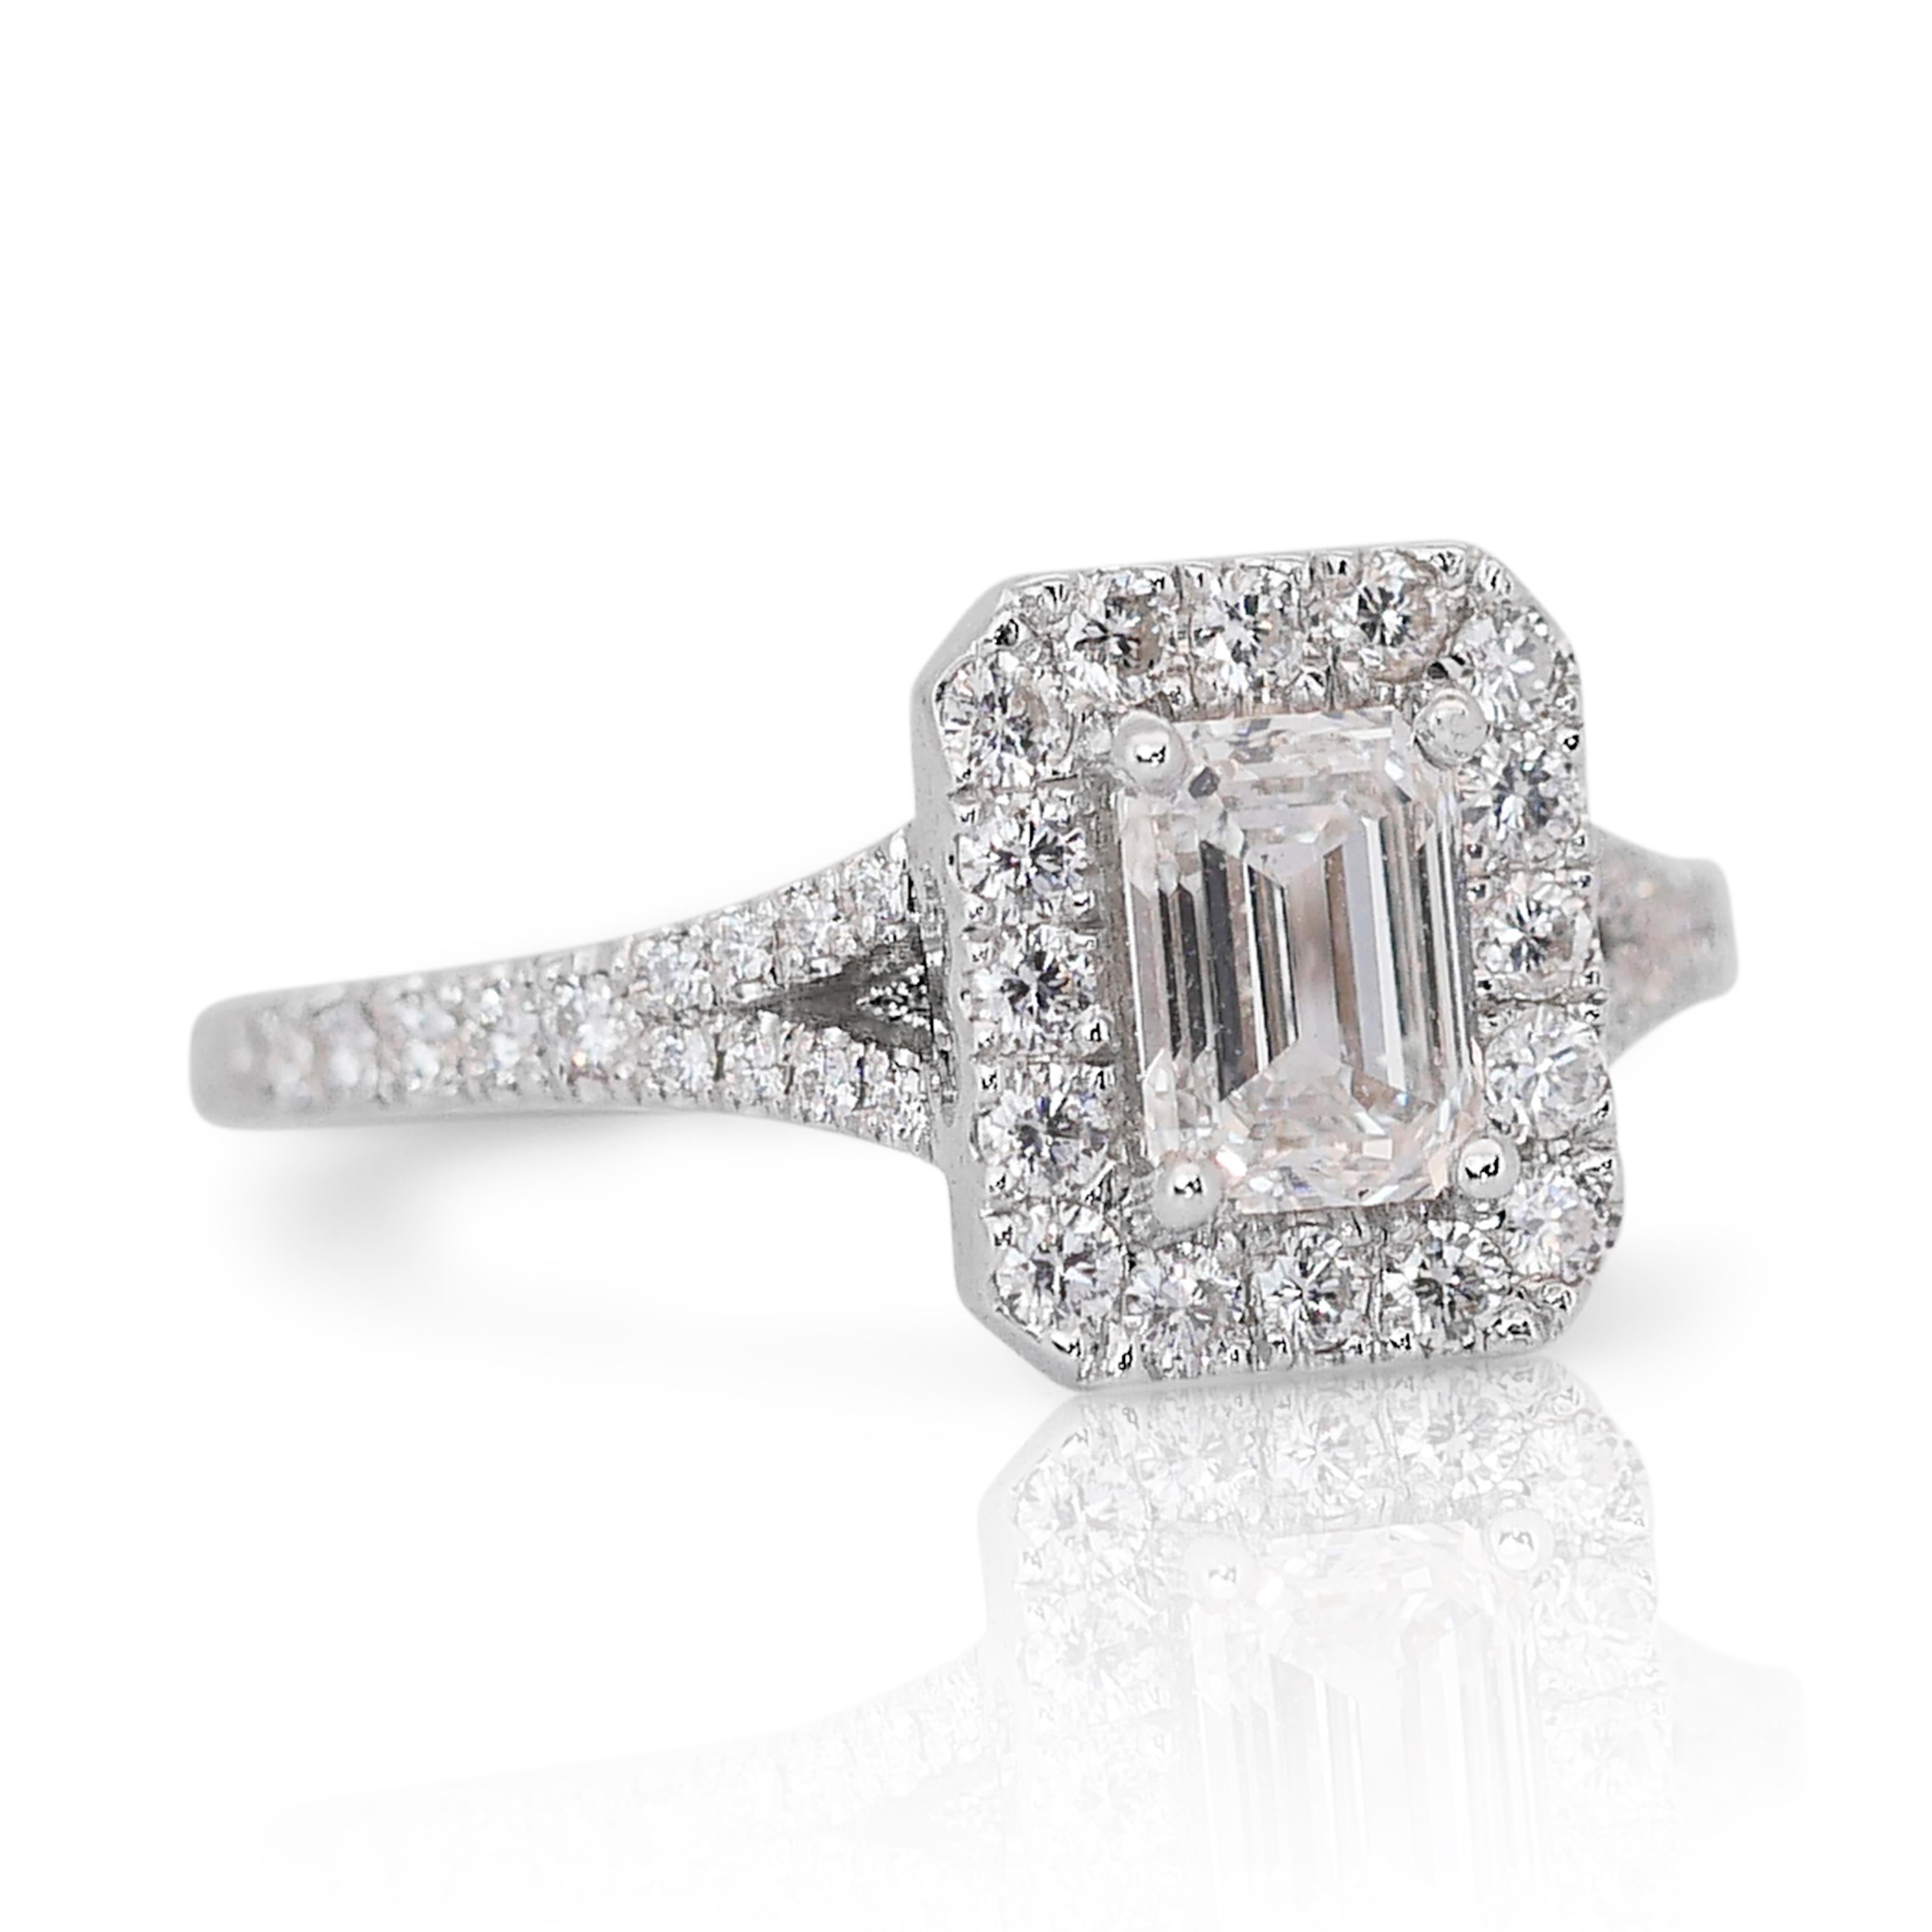 Bague halo en or blanc 18 carats de 1,15 ct de diamant taille émeraude - certifiée GIA 

Cette exquise bague à halo de diamants en or blanc 18 carats est un mélange parfait d'élégance moderne et de design intemporel. Elle est ornée d'un diamant